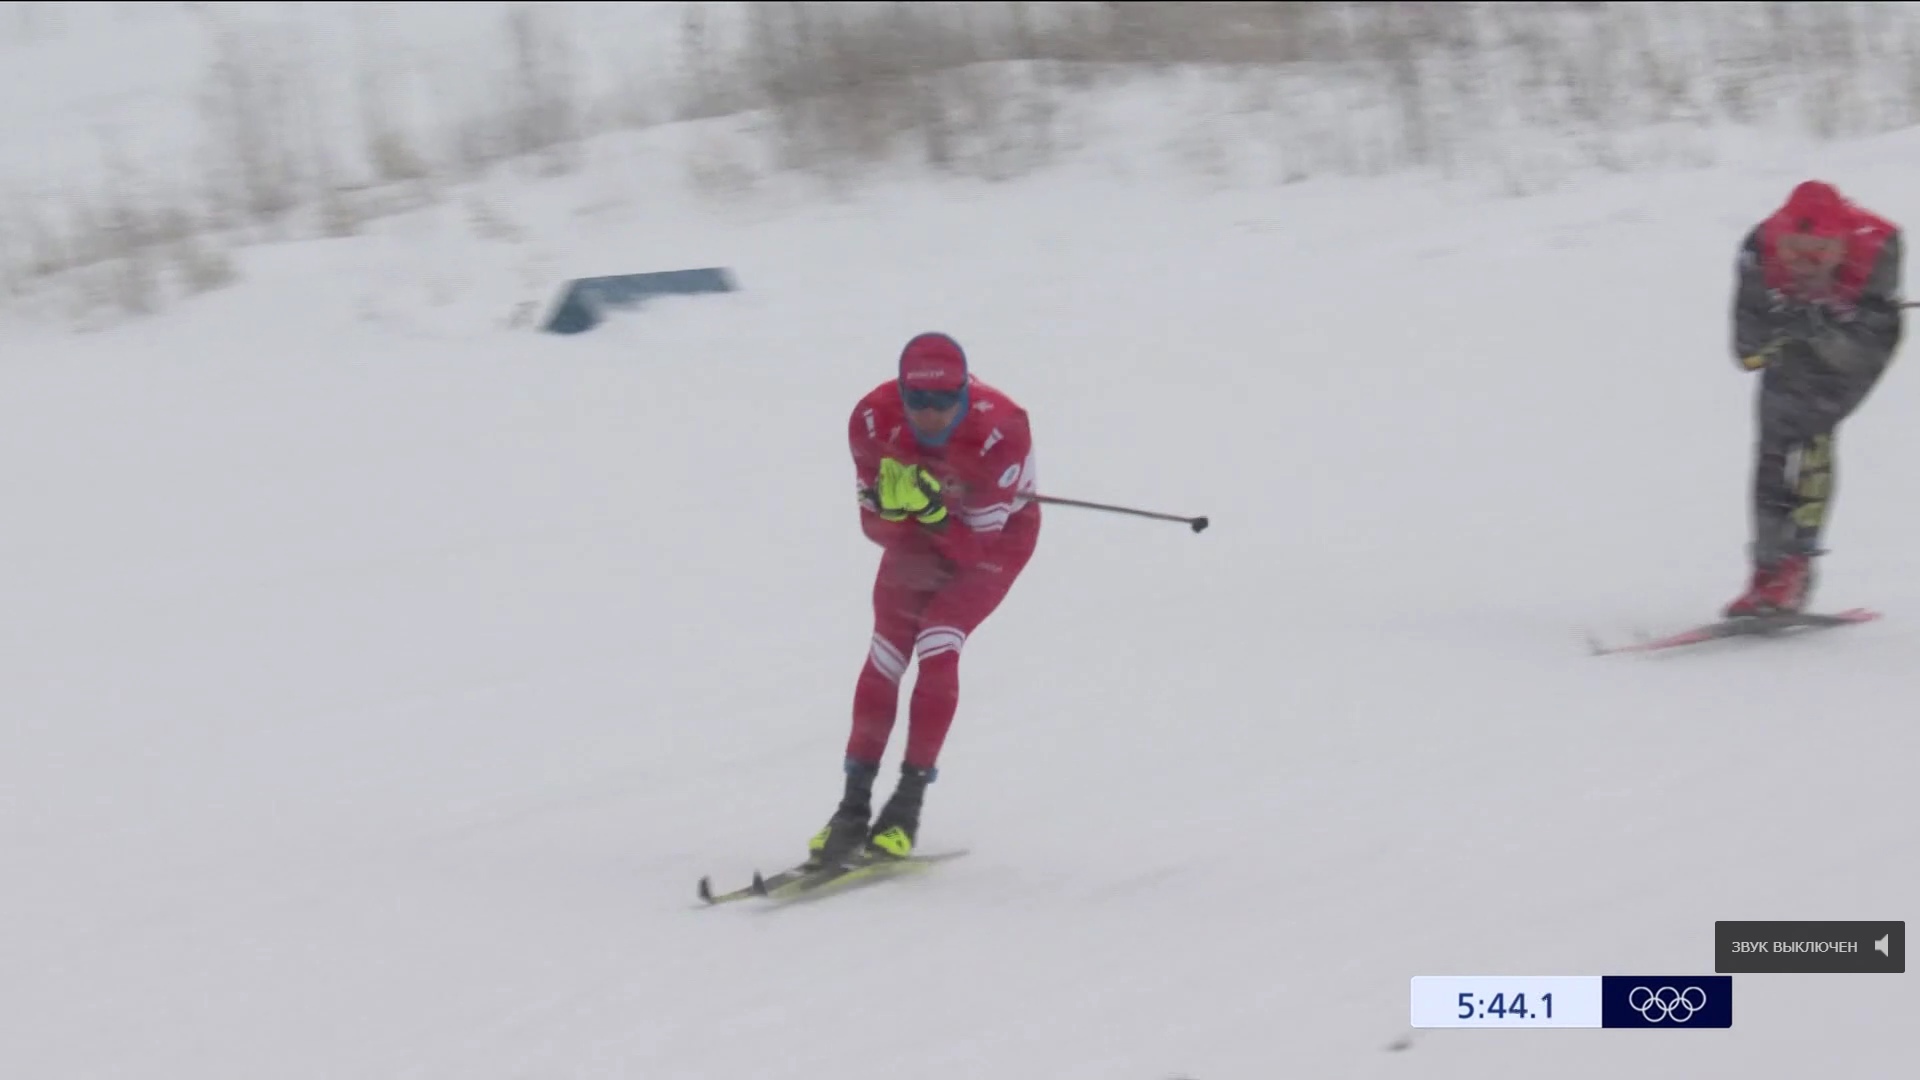 "Золотая медаль не вскружила голову": кировский лыжник рассказал о победе на Олимпиаде